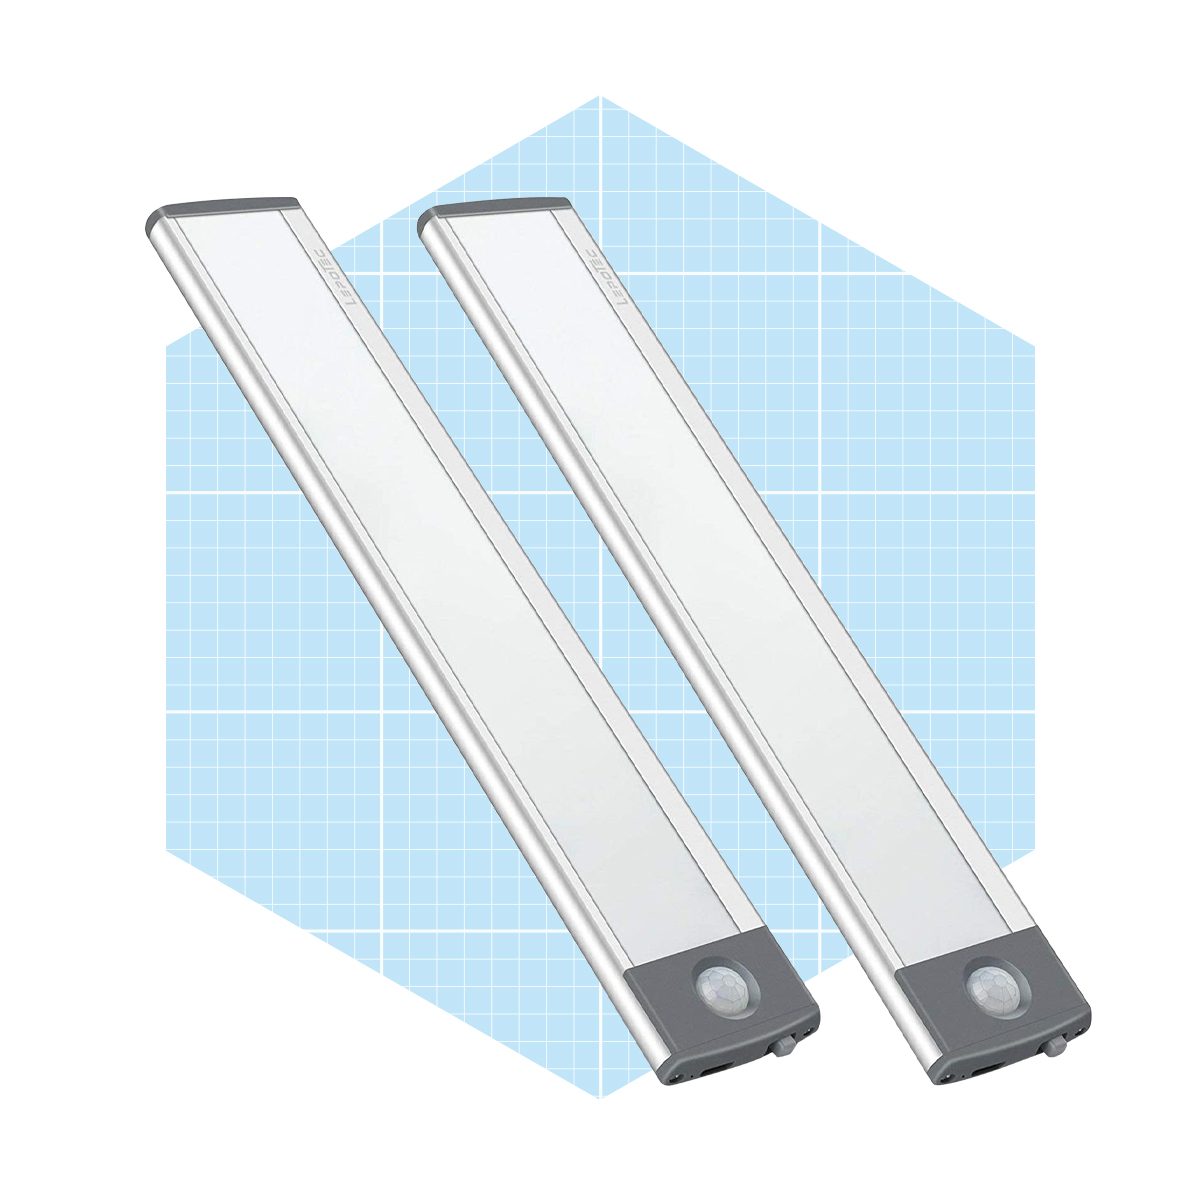 30 LED Motion Sensor Cabinet Light Ecomm Amazon.com  ?resize=185